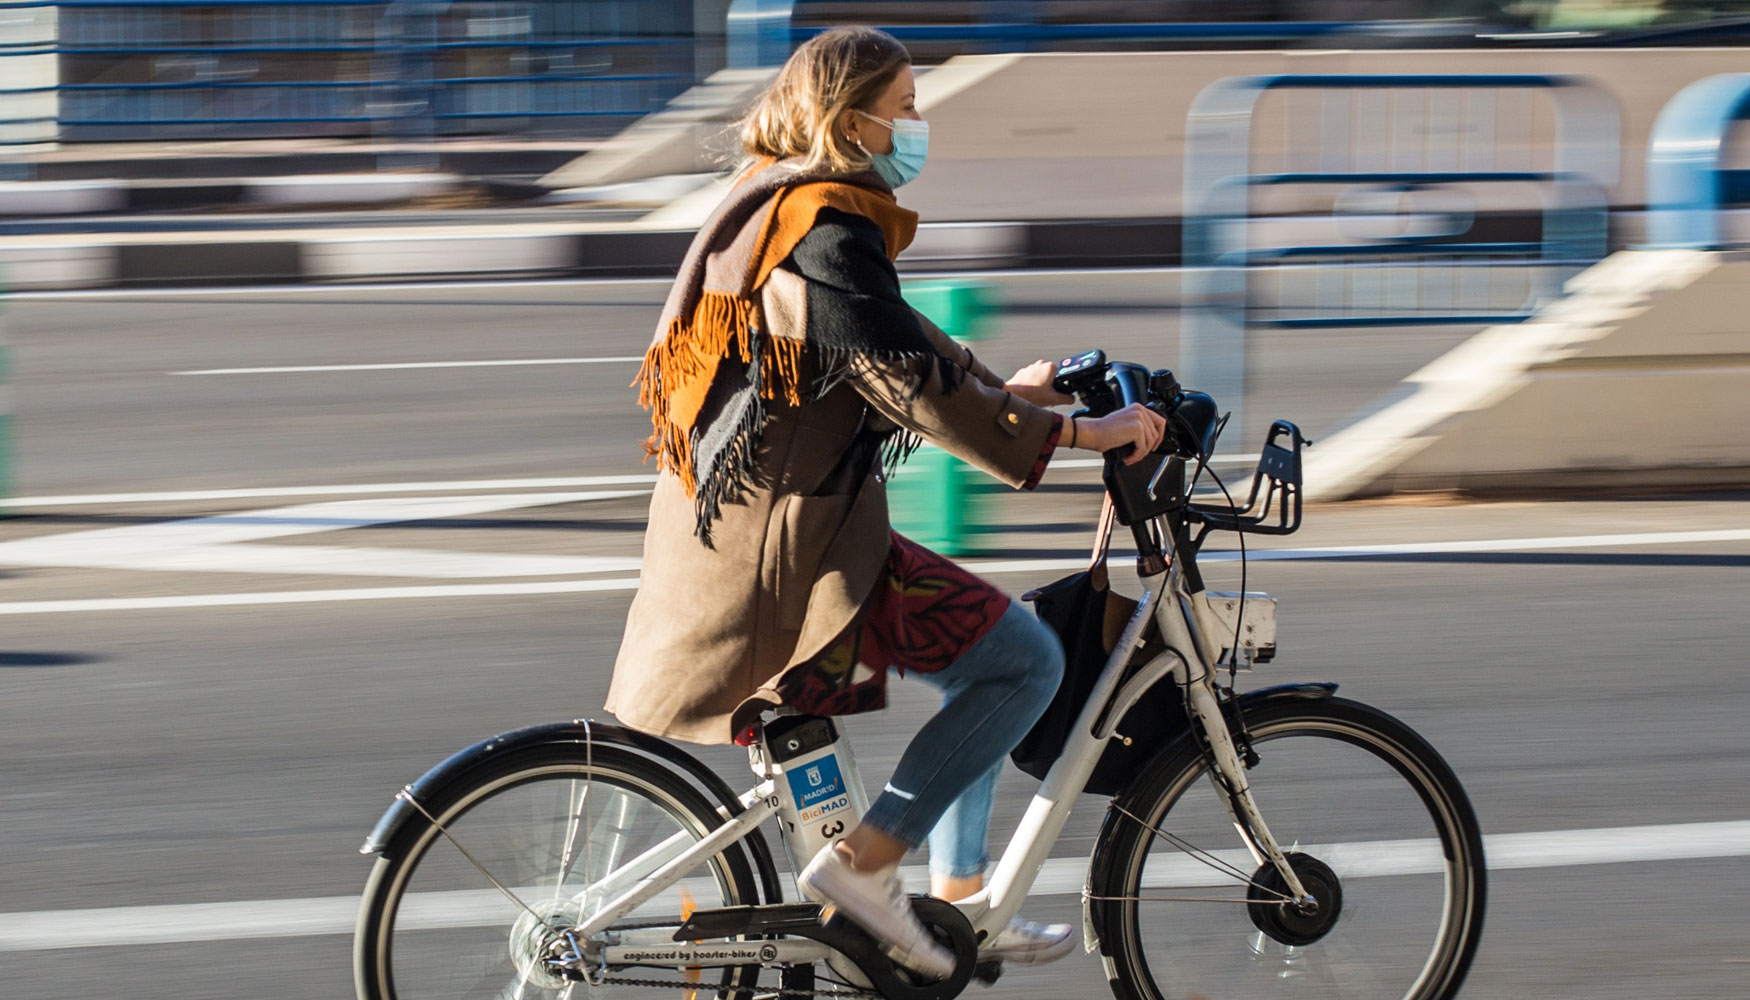 En casi todas las ciudades analizadas, la mayora de los encuestados se siente ms segura en coche que en bicicleta...